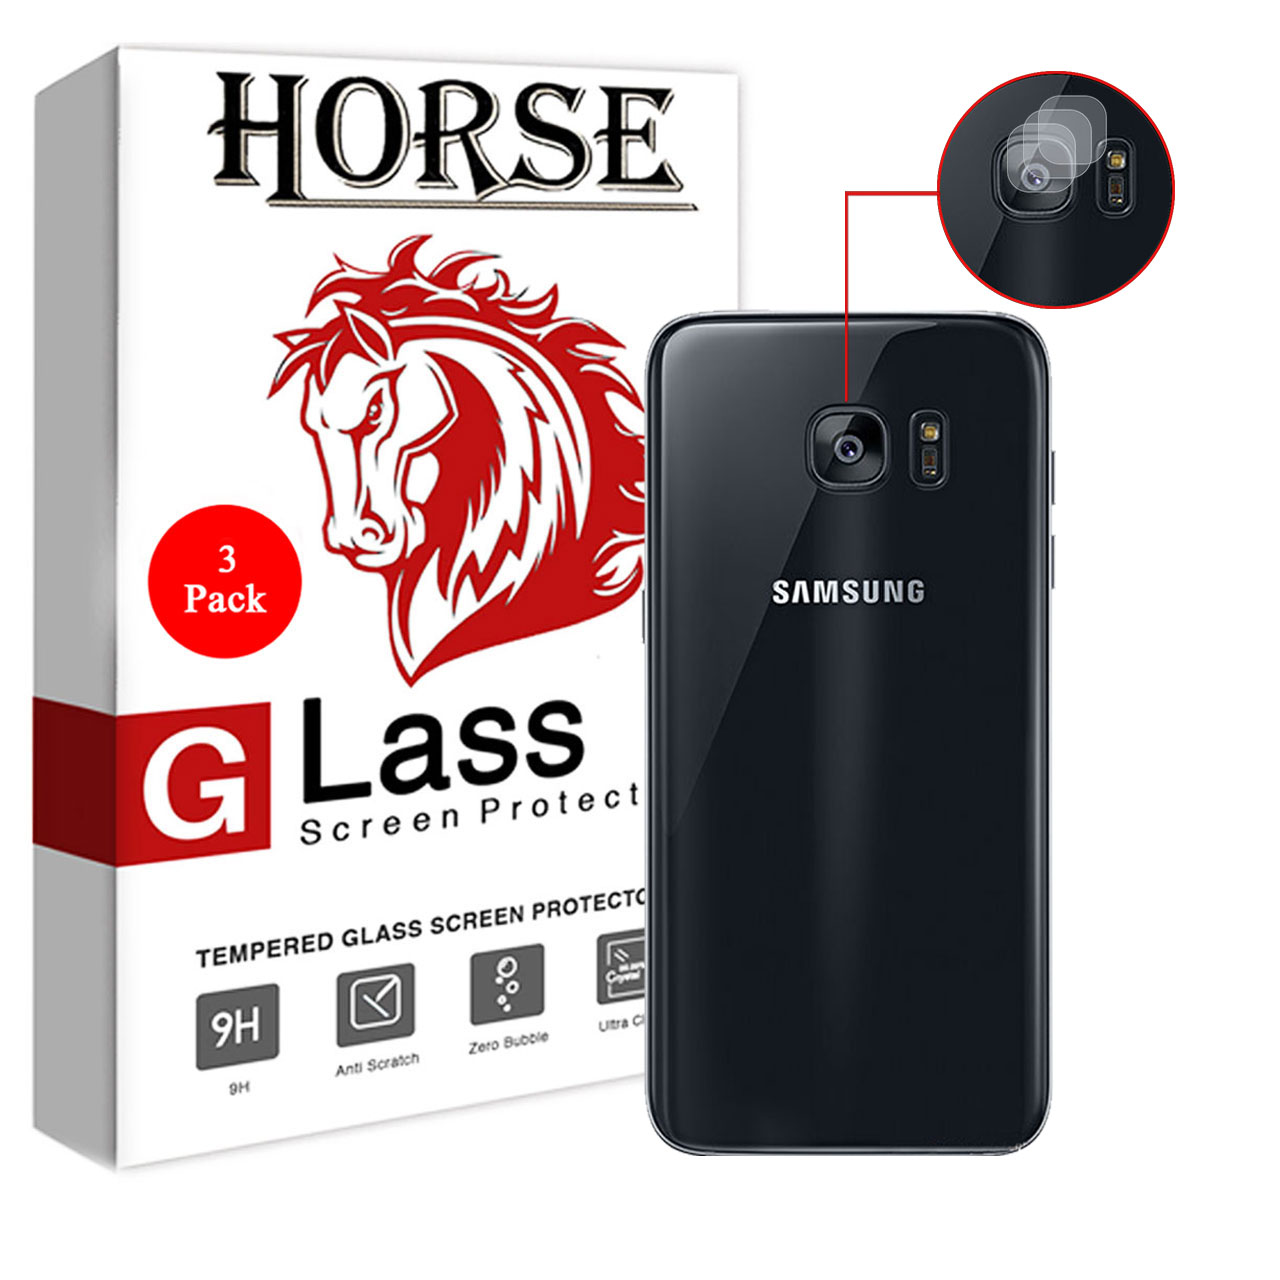 محافظ لنز دوربین هورس مدل UTF مناسب برای گوشی موبایل سامسونگ Galaxy S7 edge بسته سه عددی